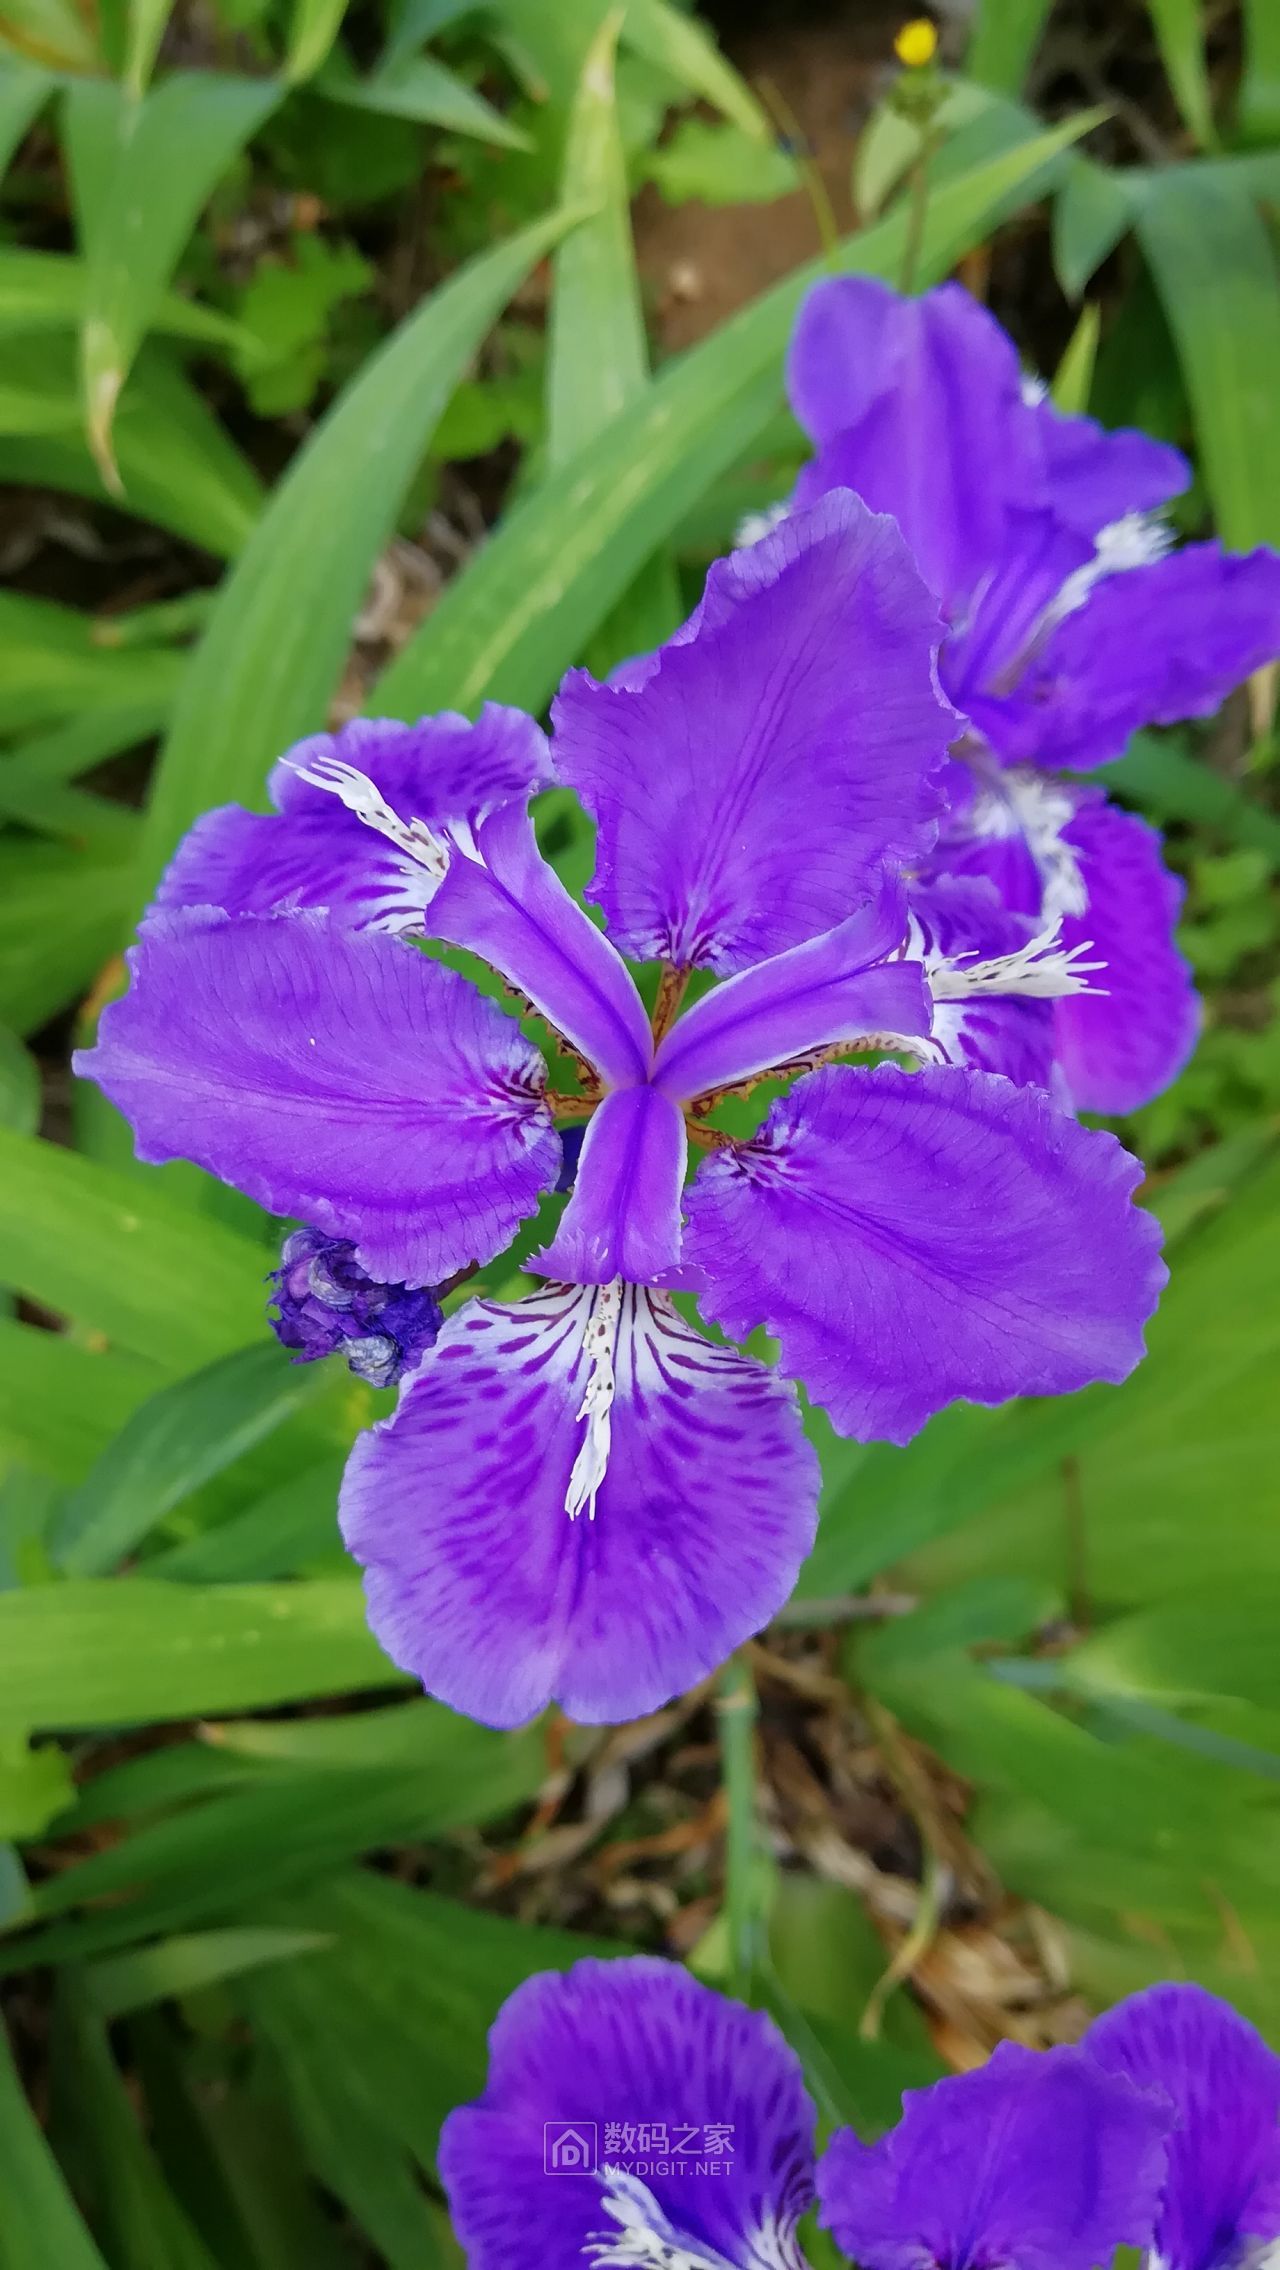 薇薇花园: 蓝蝴蝶花